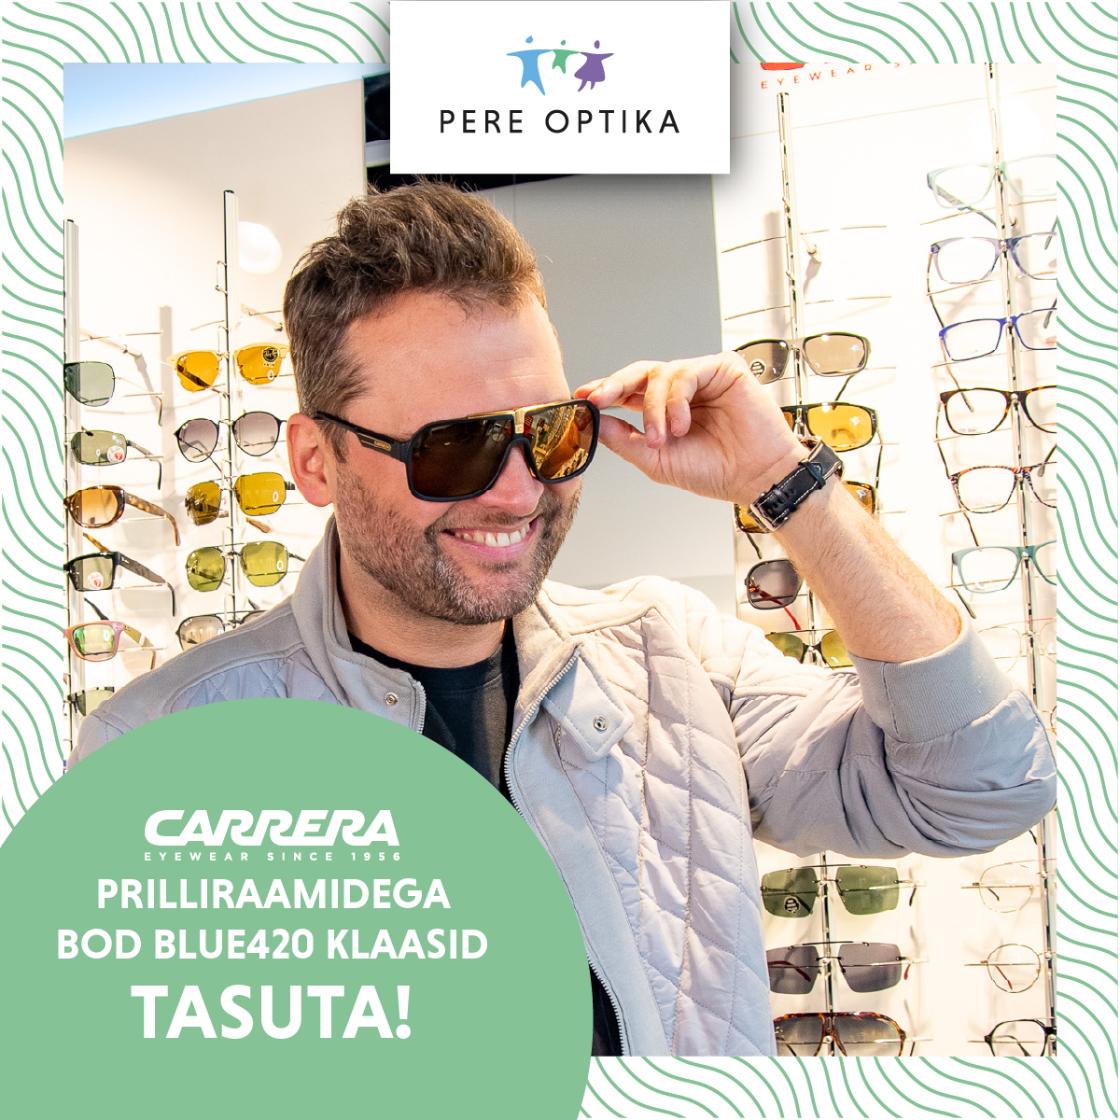 Carrera prilliraamidega kaasa TASUTA Blue 420 prilliklaasid - Pere Optika